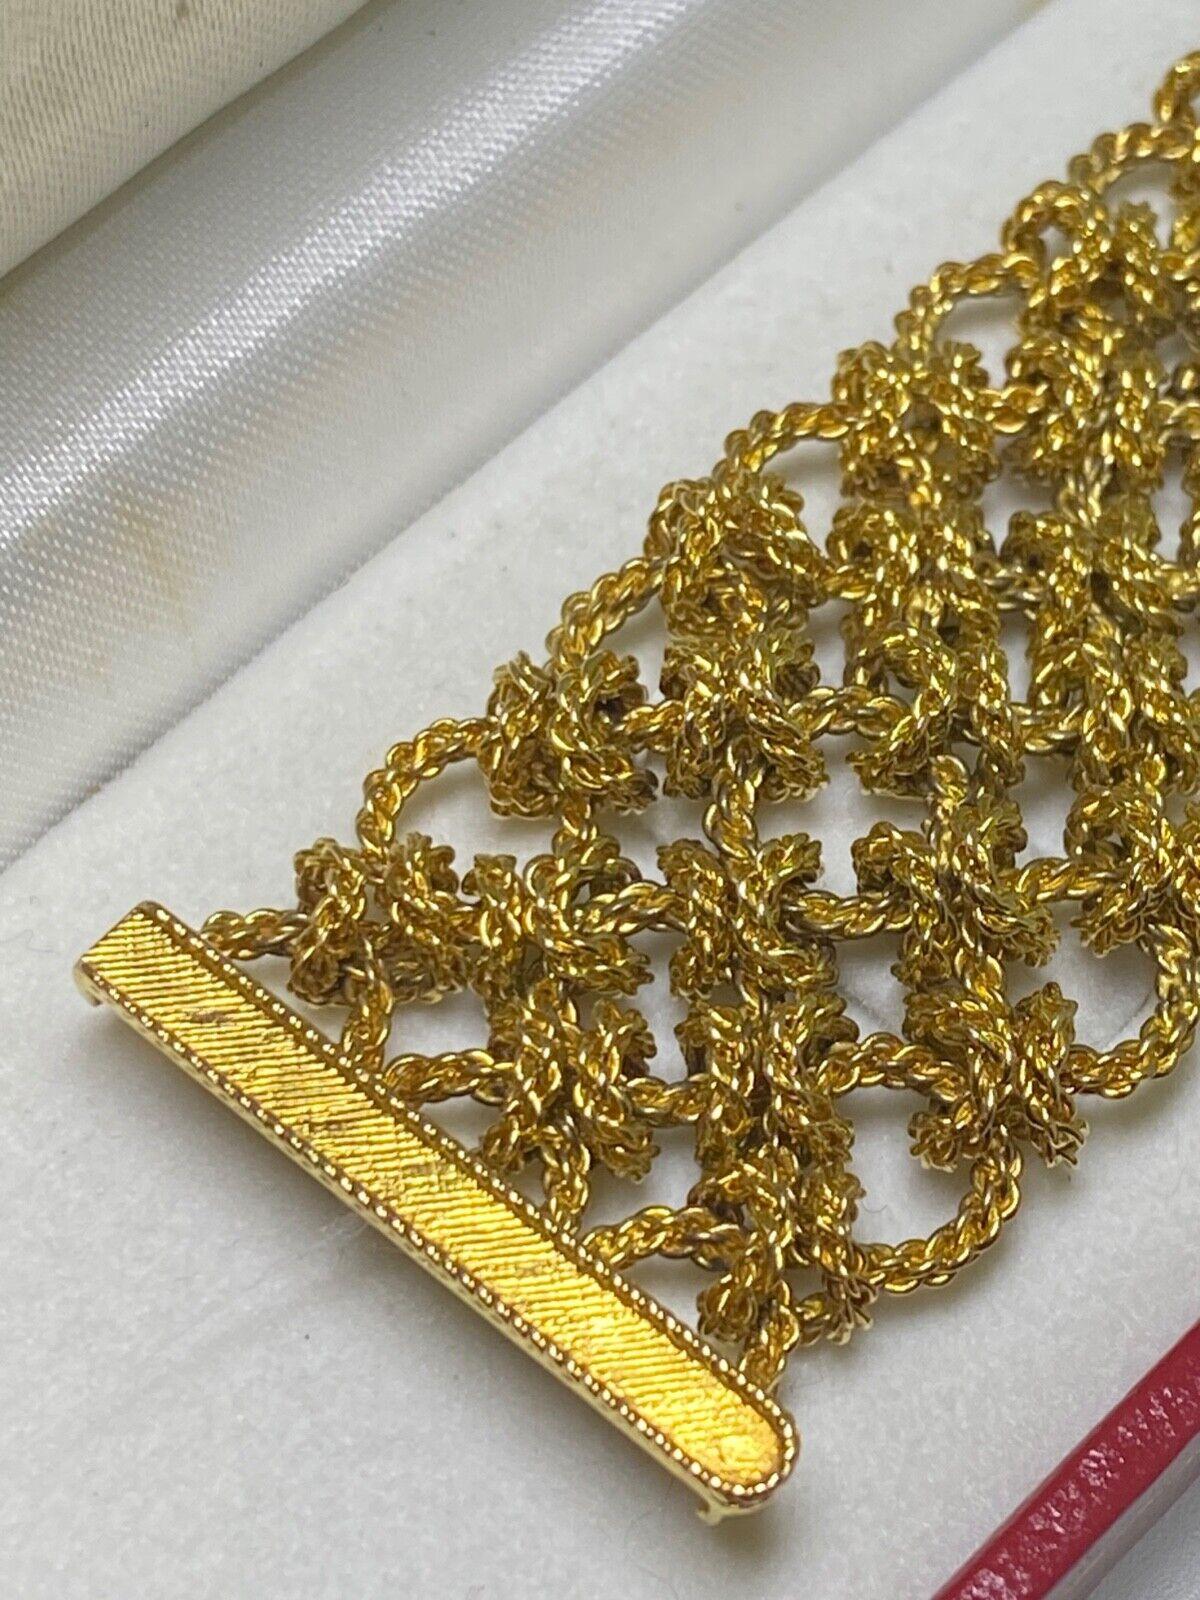 Bueche-Girod 18k Gold & 5.00 Diamond Knitted Bracelet Dress Watch, Ref Y 9801 4